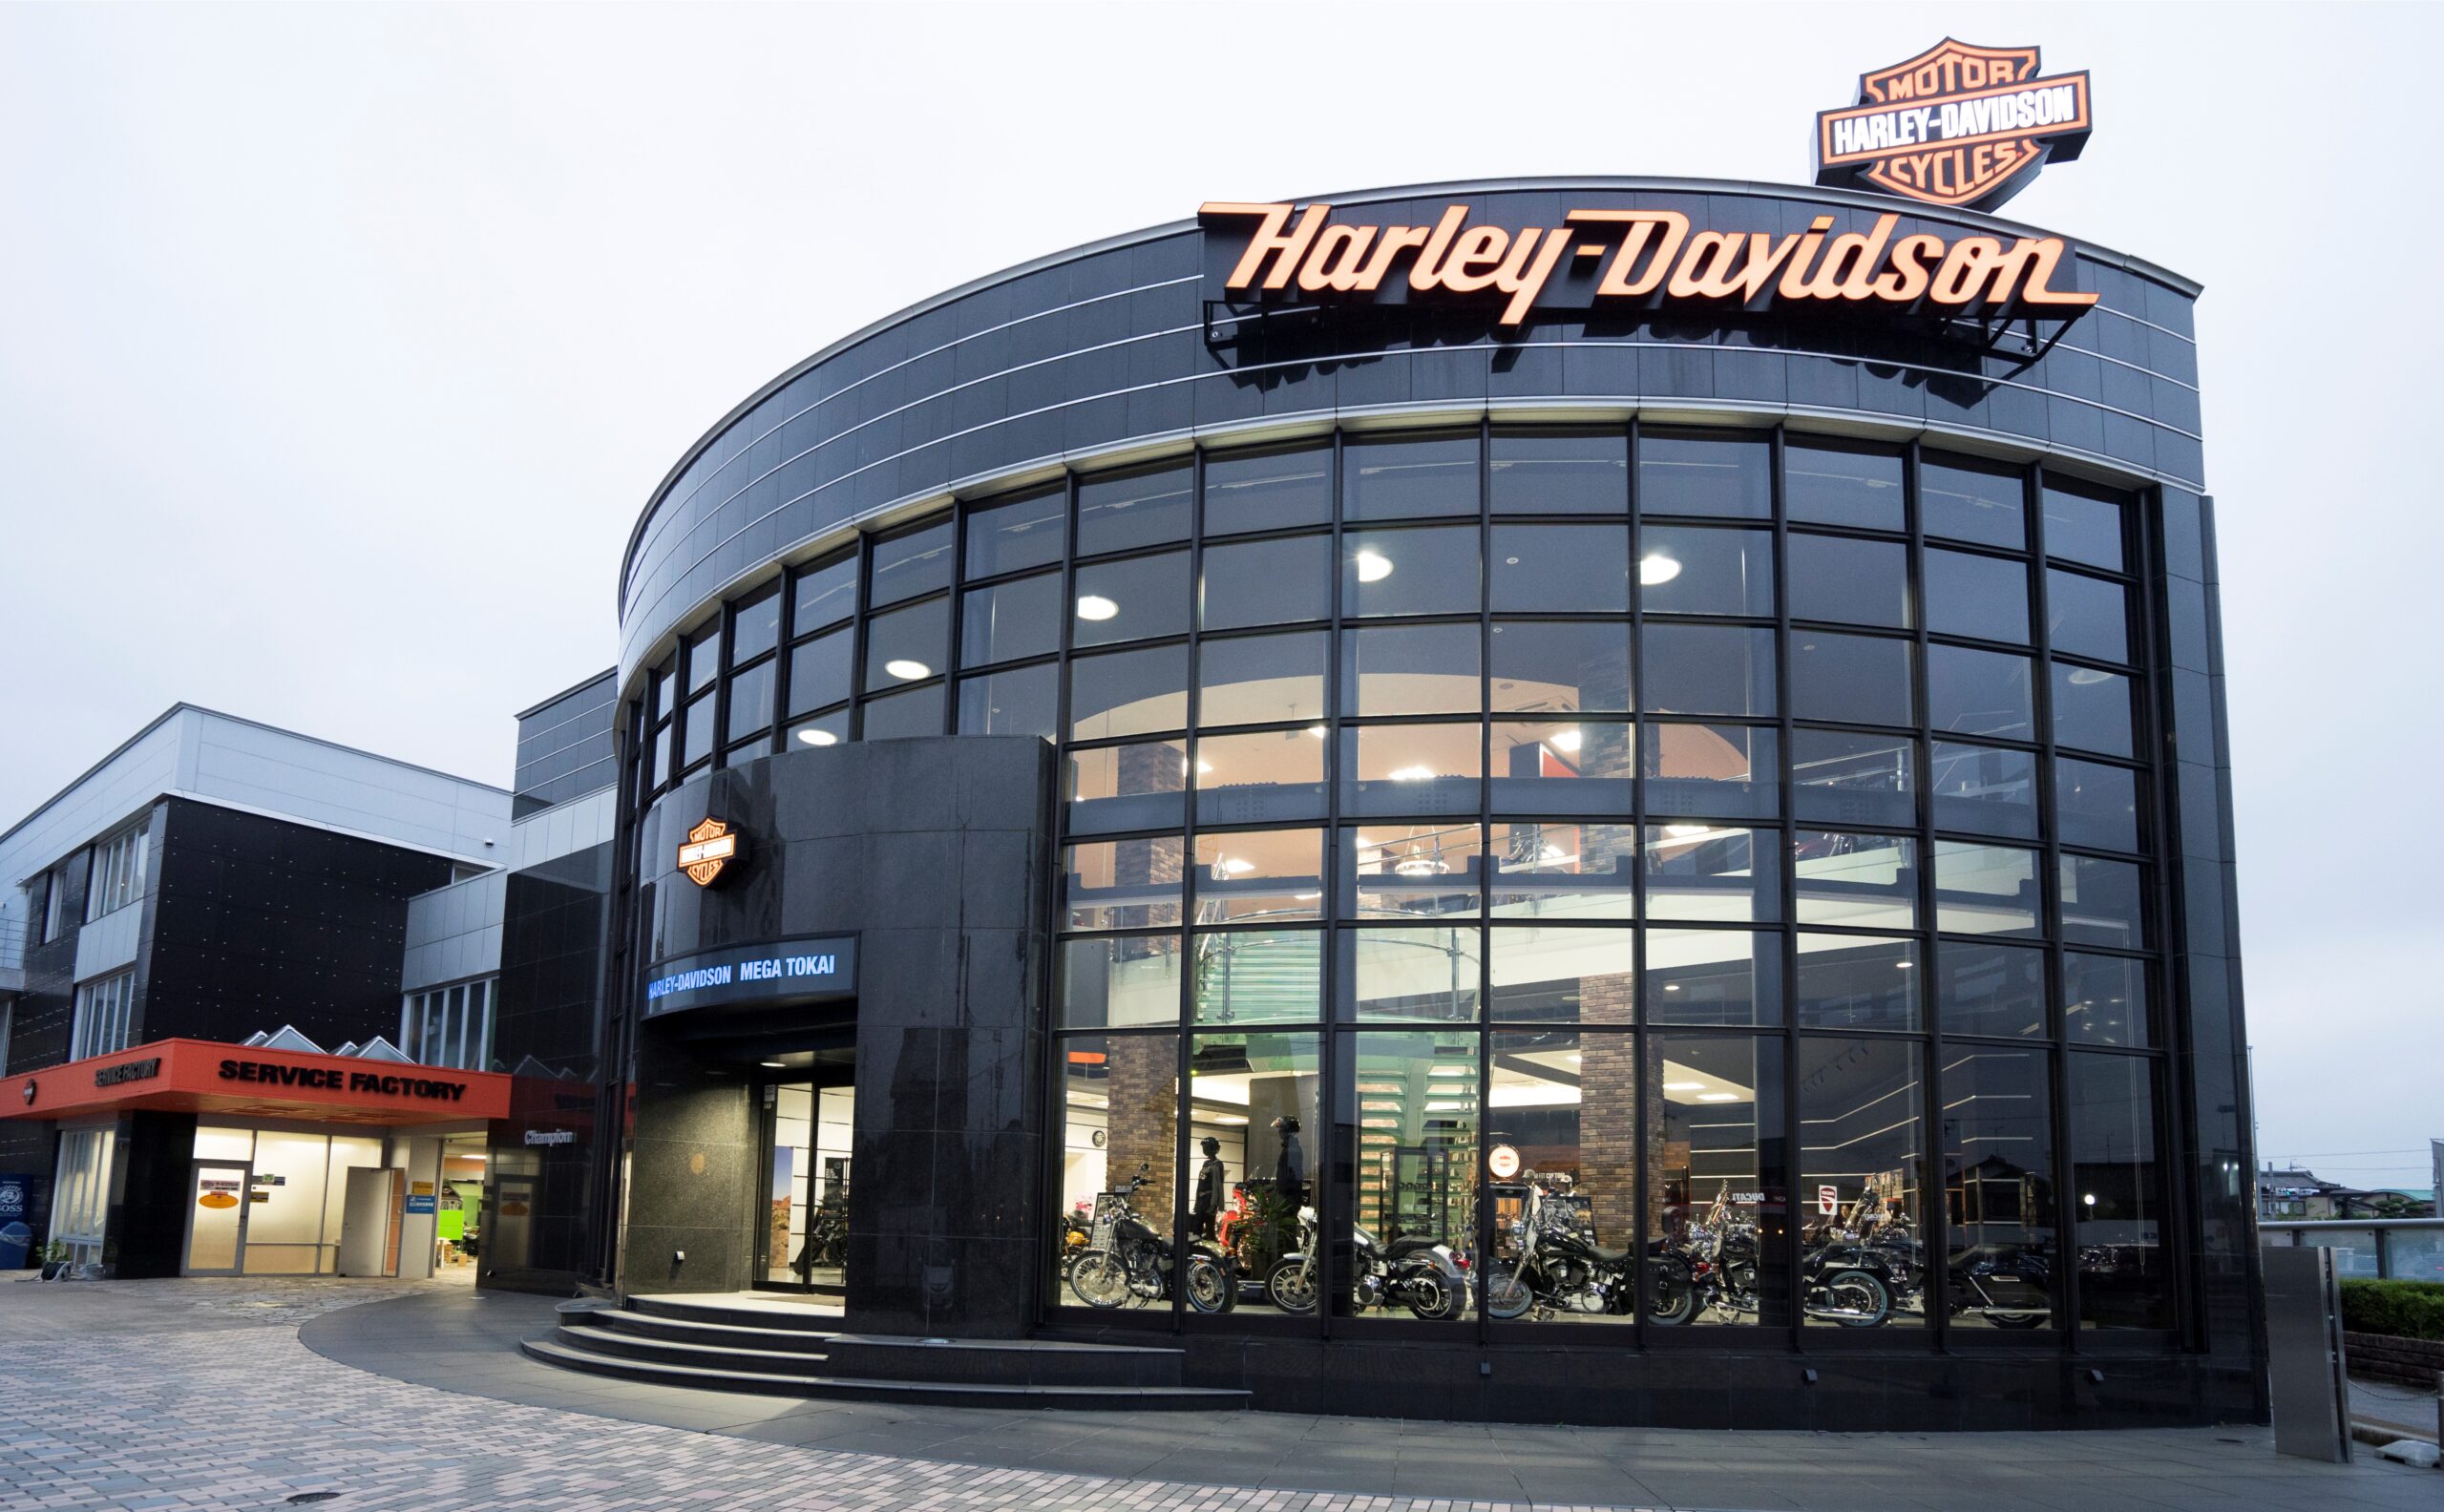 【試乗車情報】Harley Davidson MEGA東海　試乗車